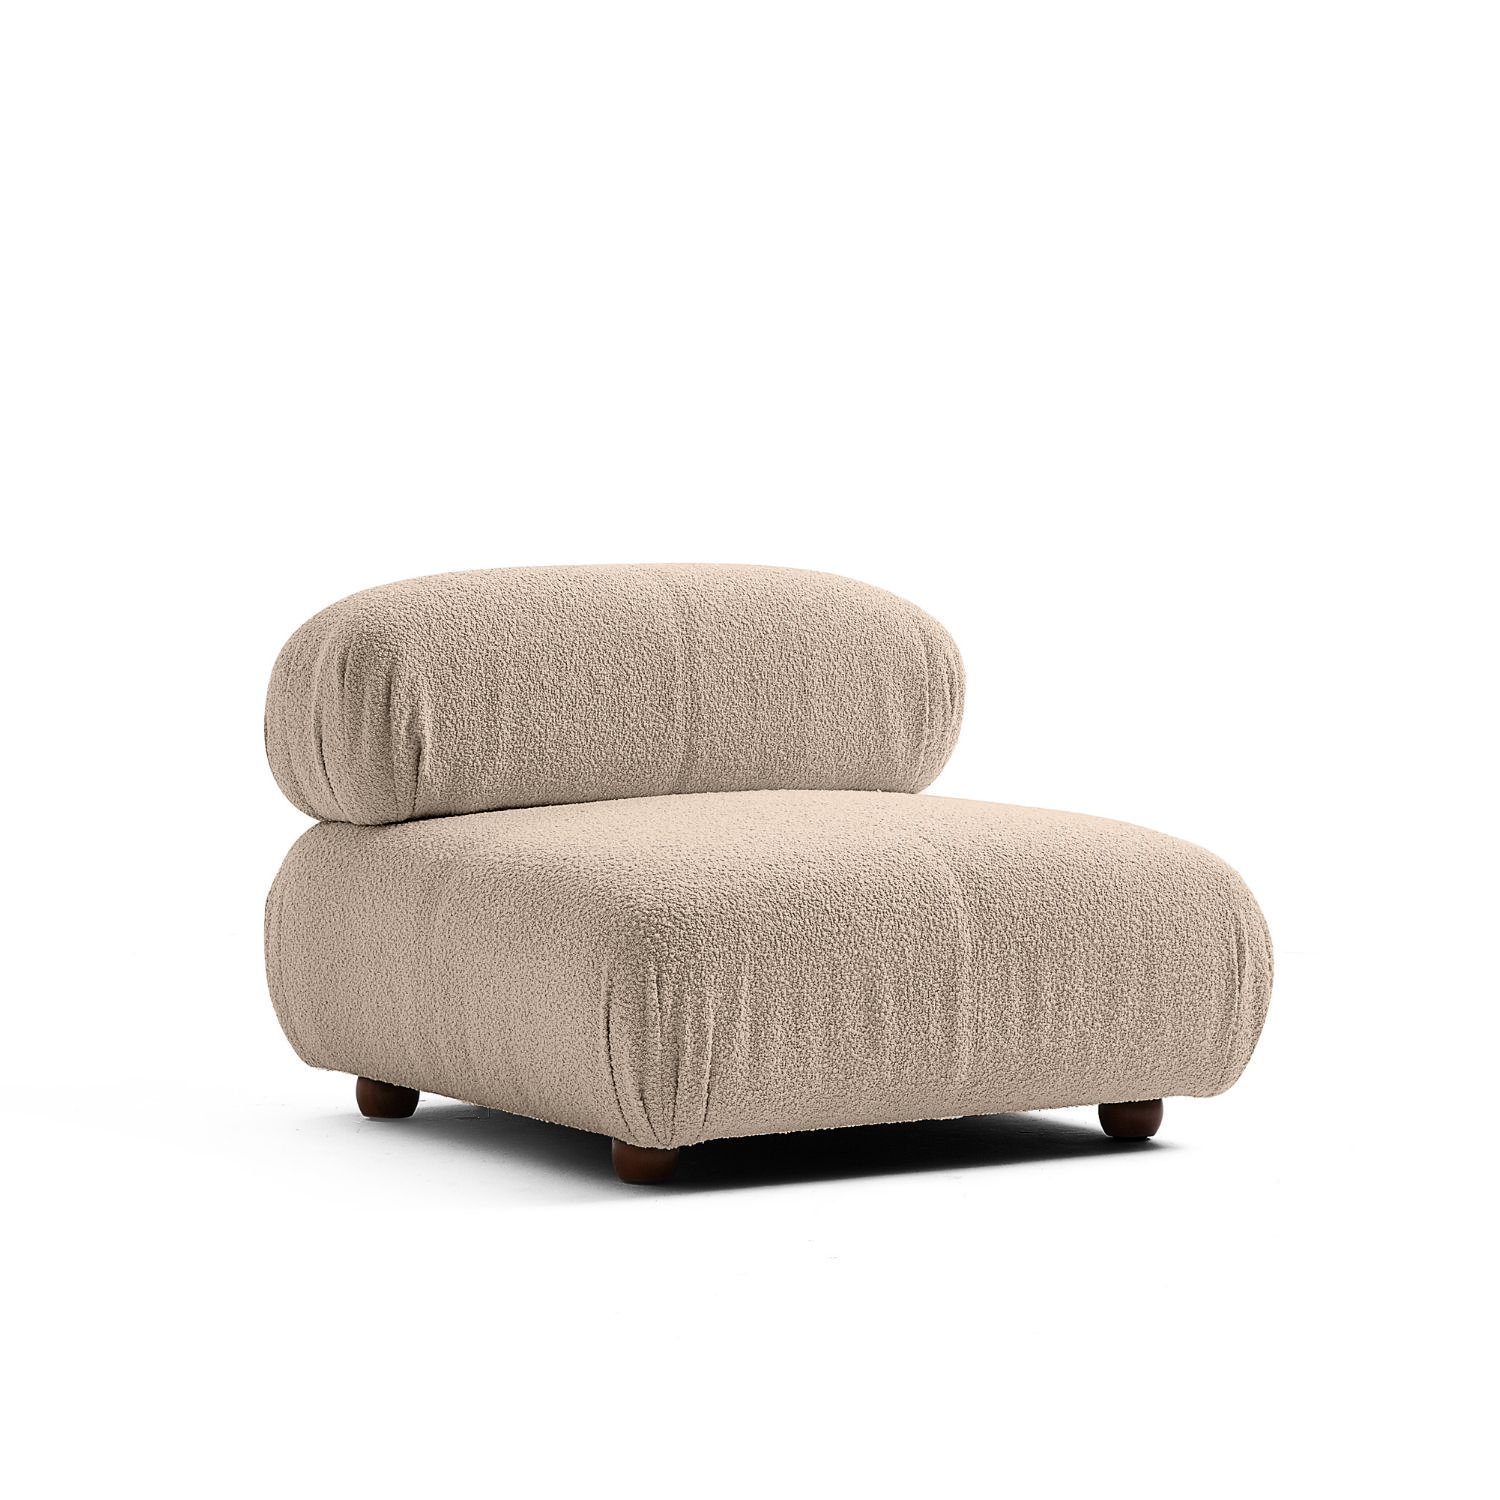 und Komfortschaum Sitzmöbel Knuffiges neueste enthalten! Graubraun-Lieferung aus Sofa Generation Preis Touch Aufbau me im